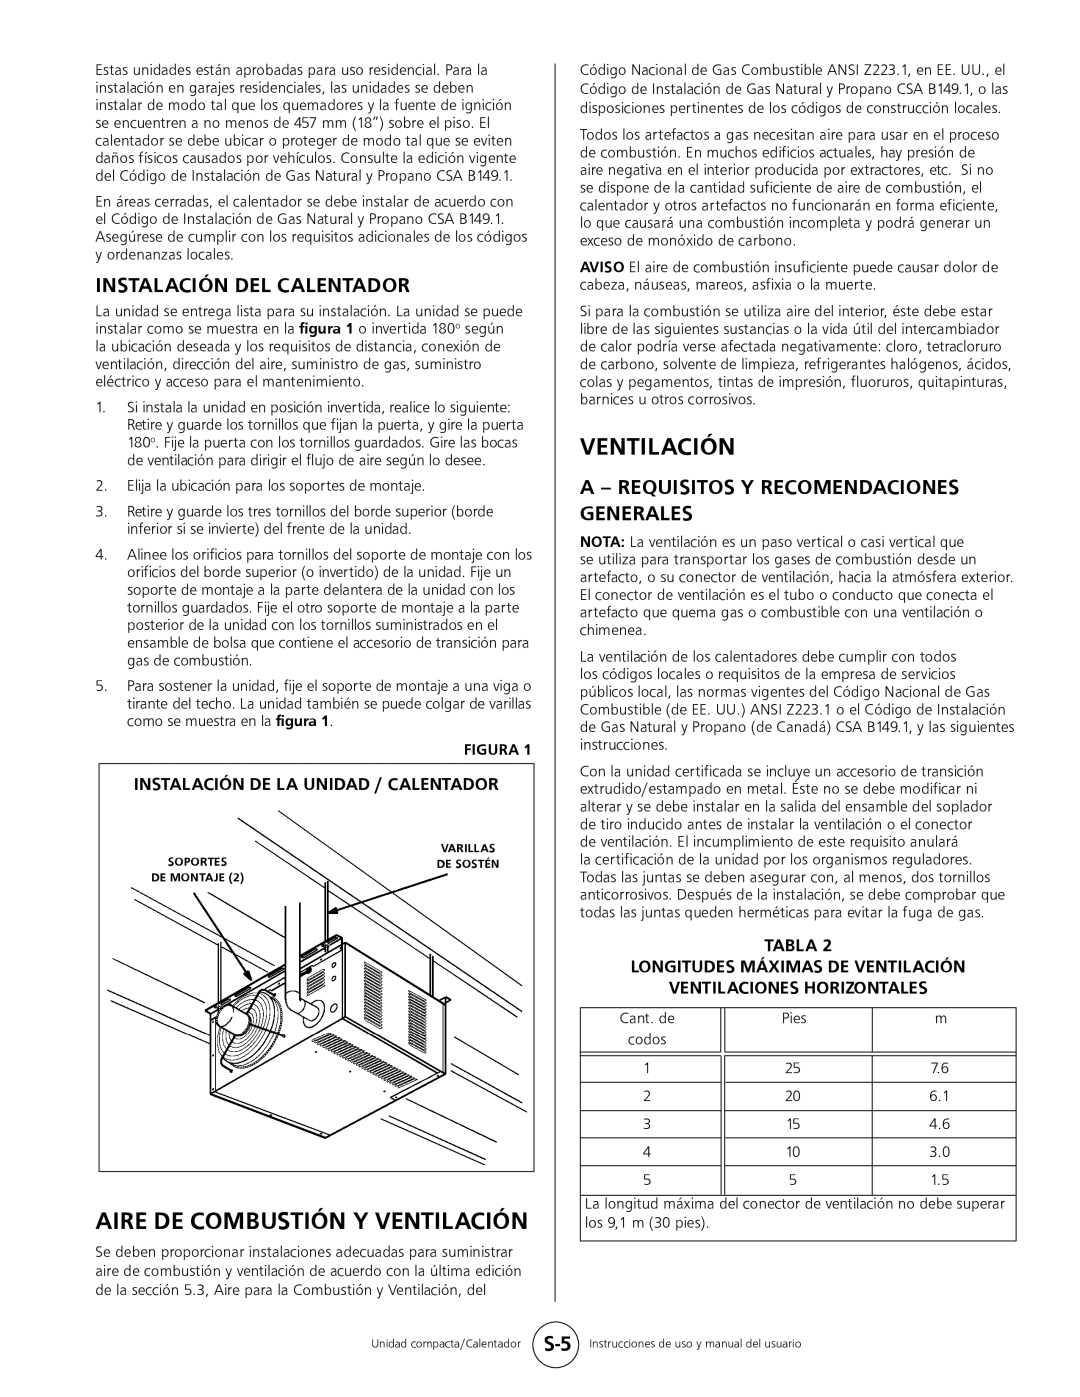 Mr. Heater MHU 80 Aire De Combustión Y Ventilación, Instalación Del Calentador, A - Requisitos Y Recomendaciones Generales 